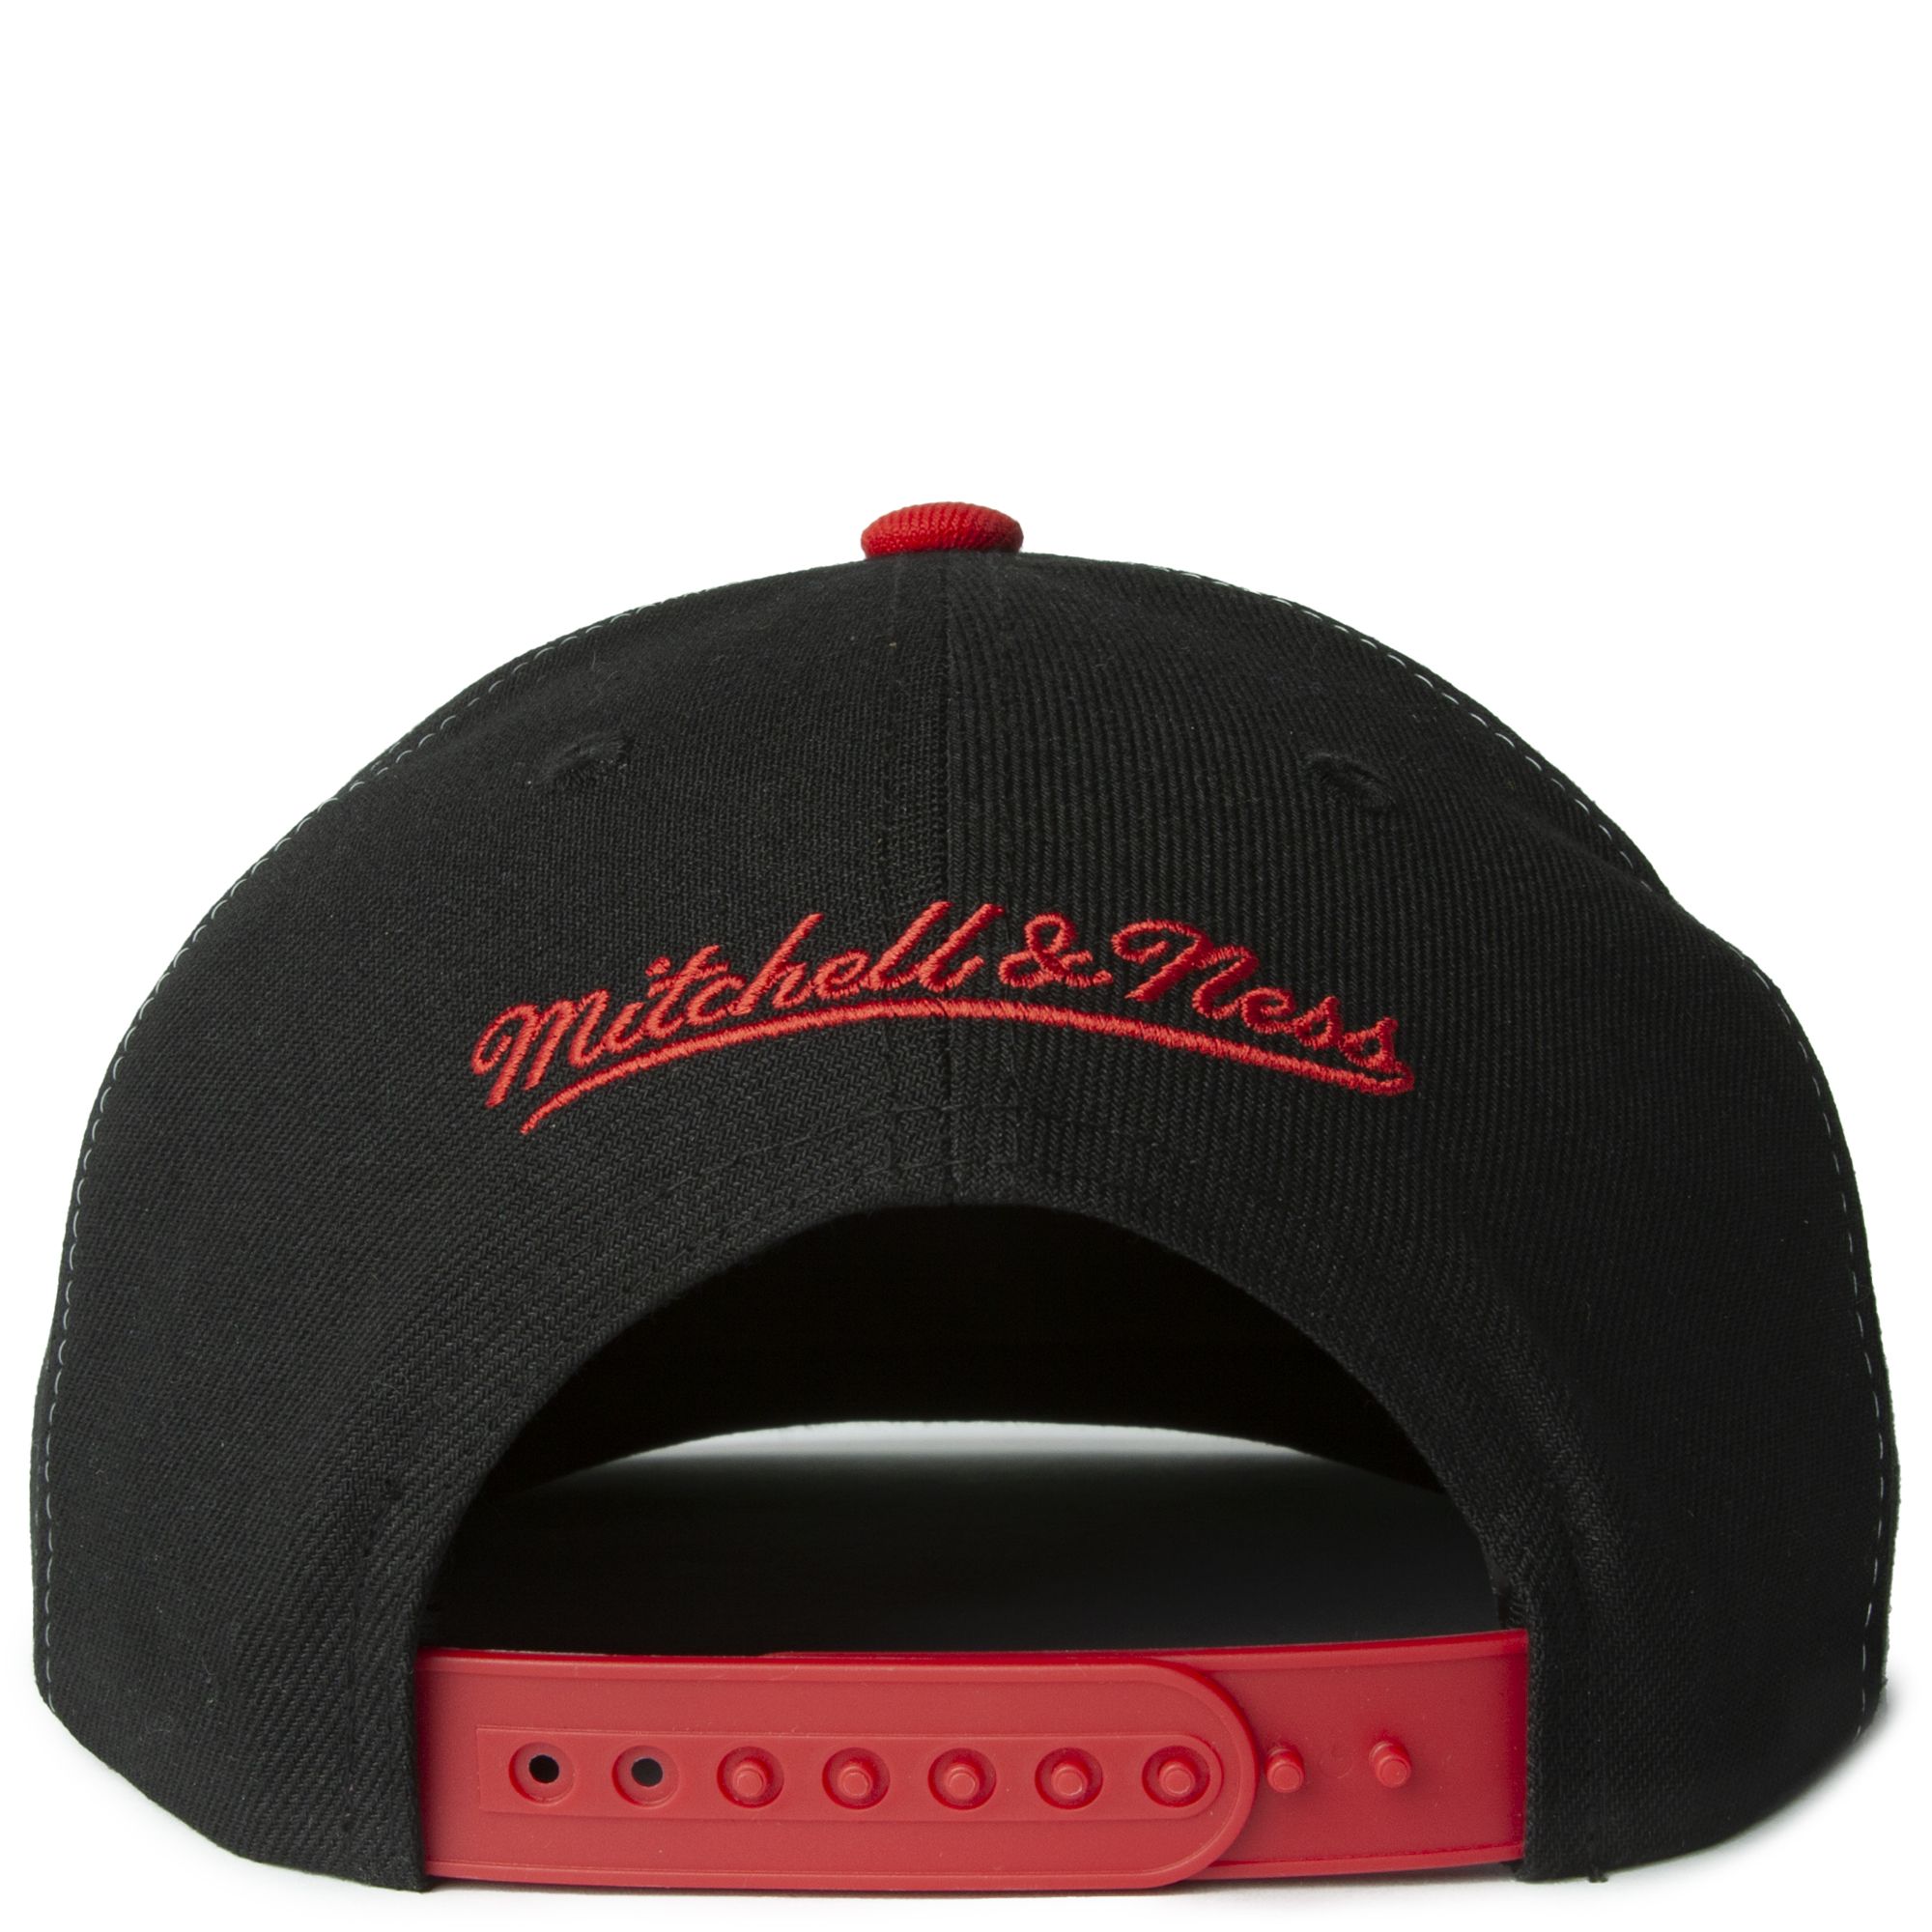 Mitchell & Ness Chicago Bulls Snapback Hat for Men - White/Black/Red -  Basketball Cap for Men